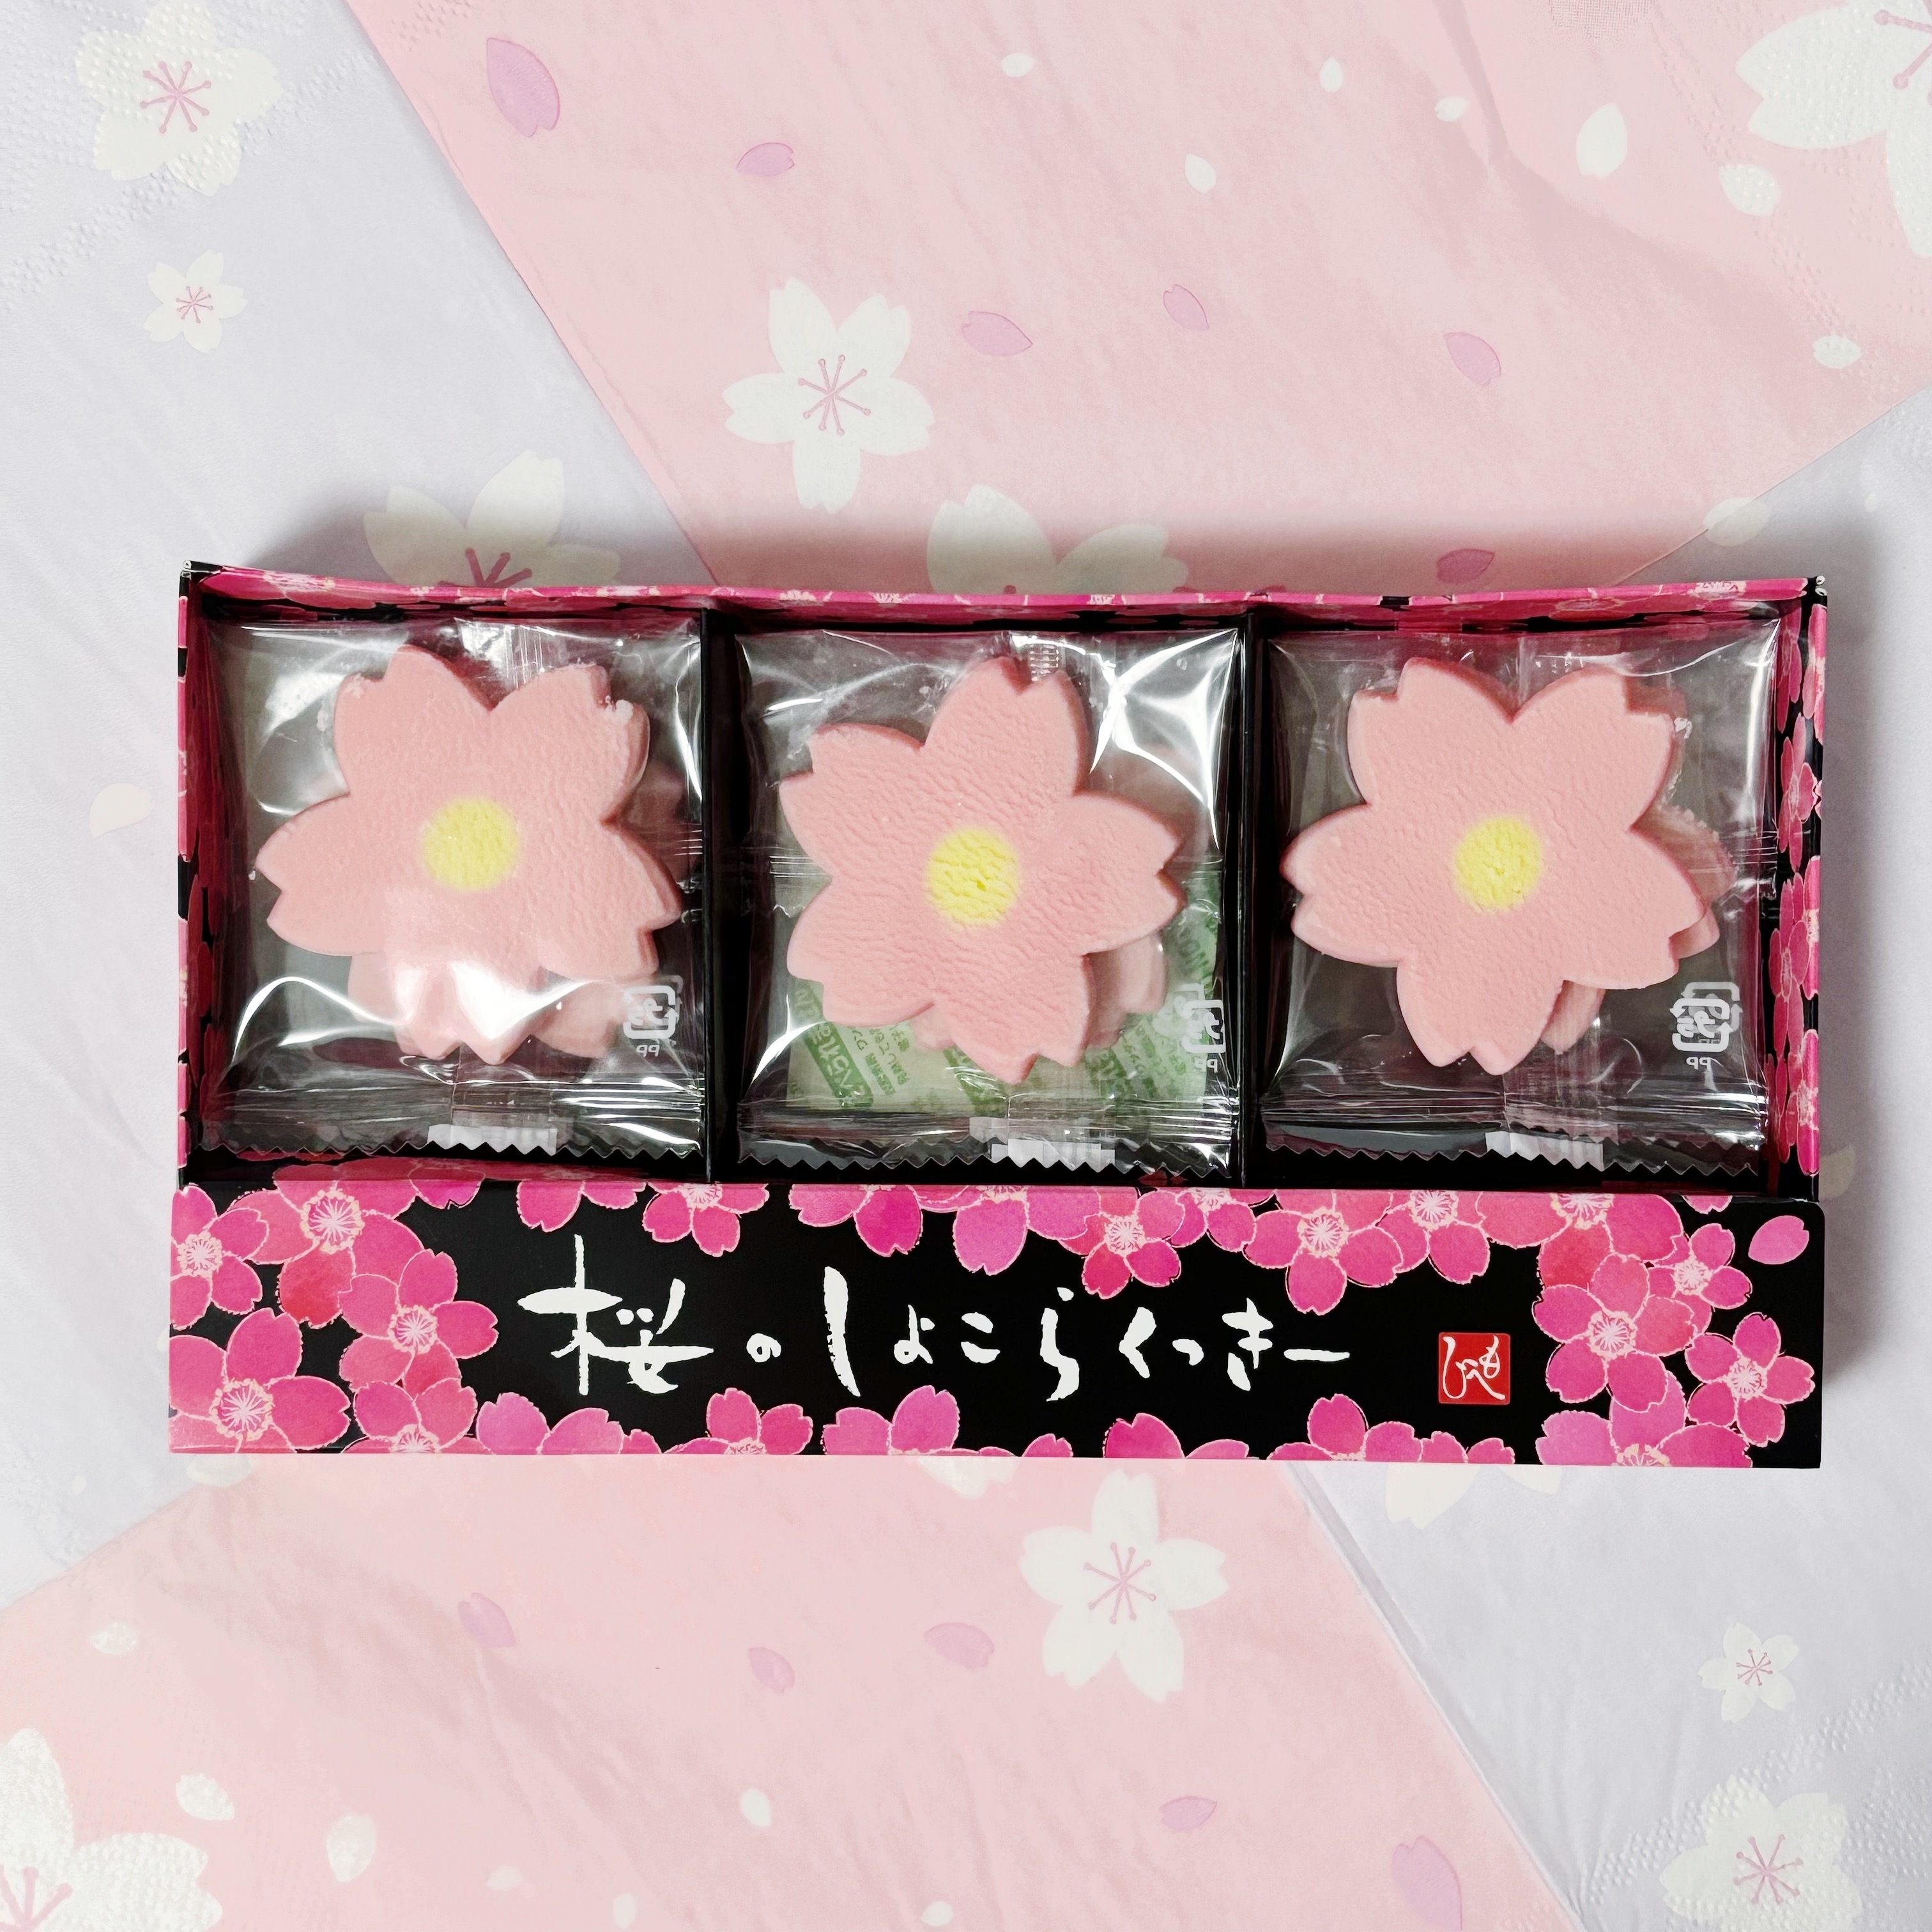 カルディのおすすめのお菓子「桜のしょこらくっきー」